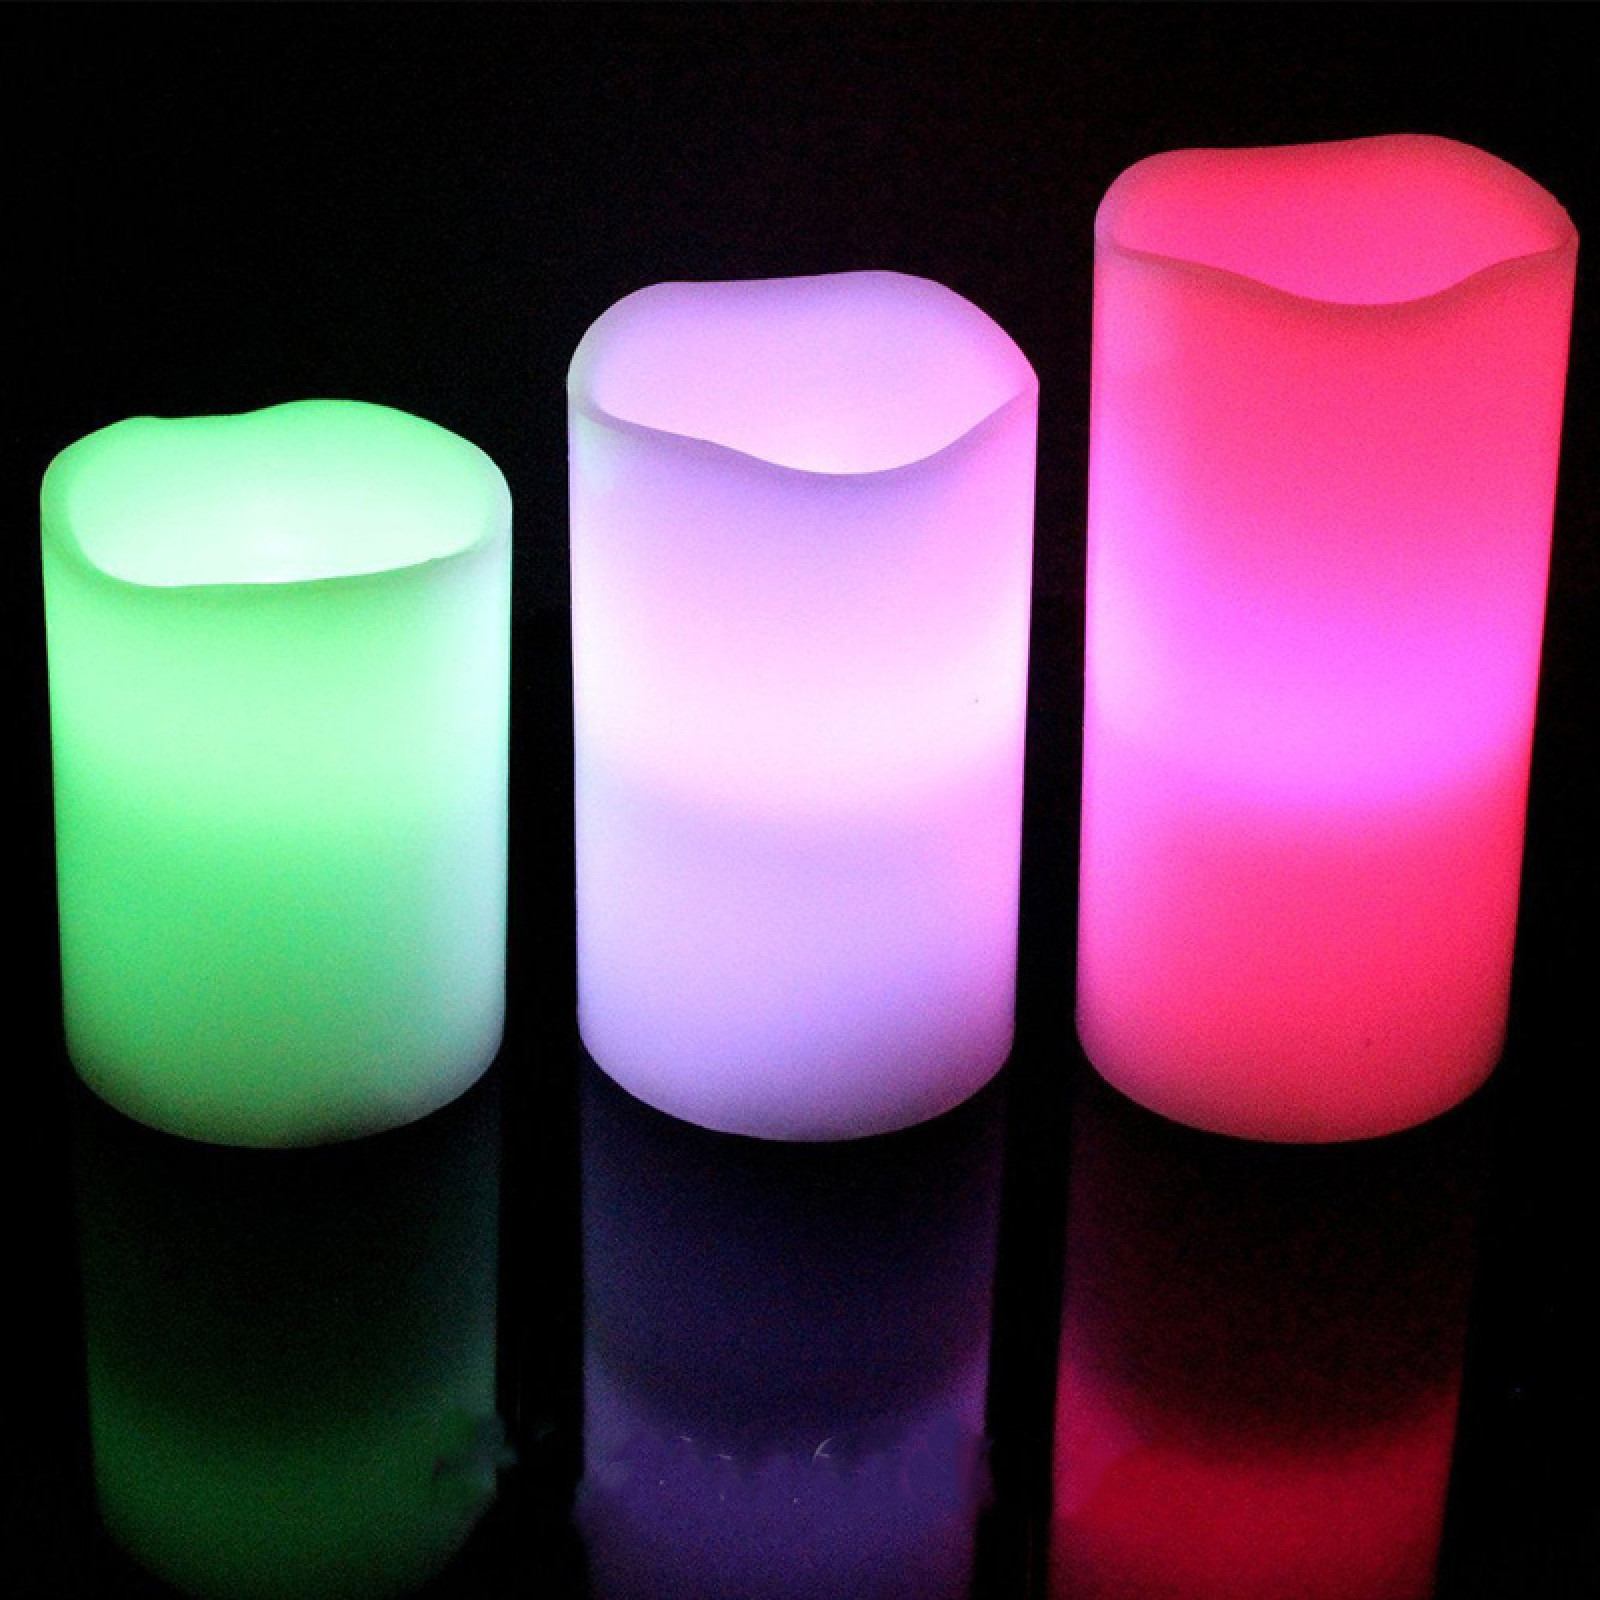 Свечи электронные светодиодные на батарейках Luma Candles Color Changing 150968